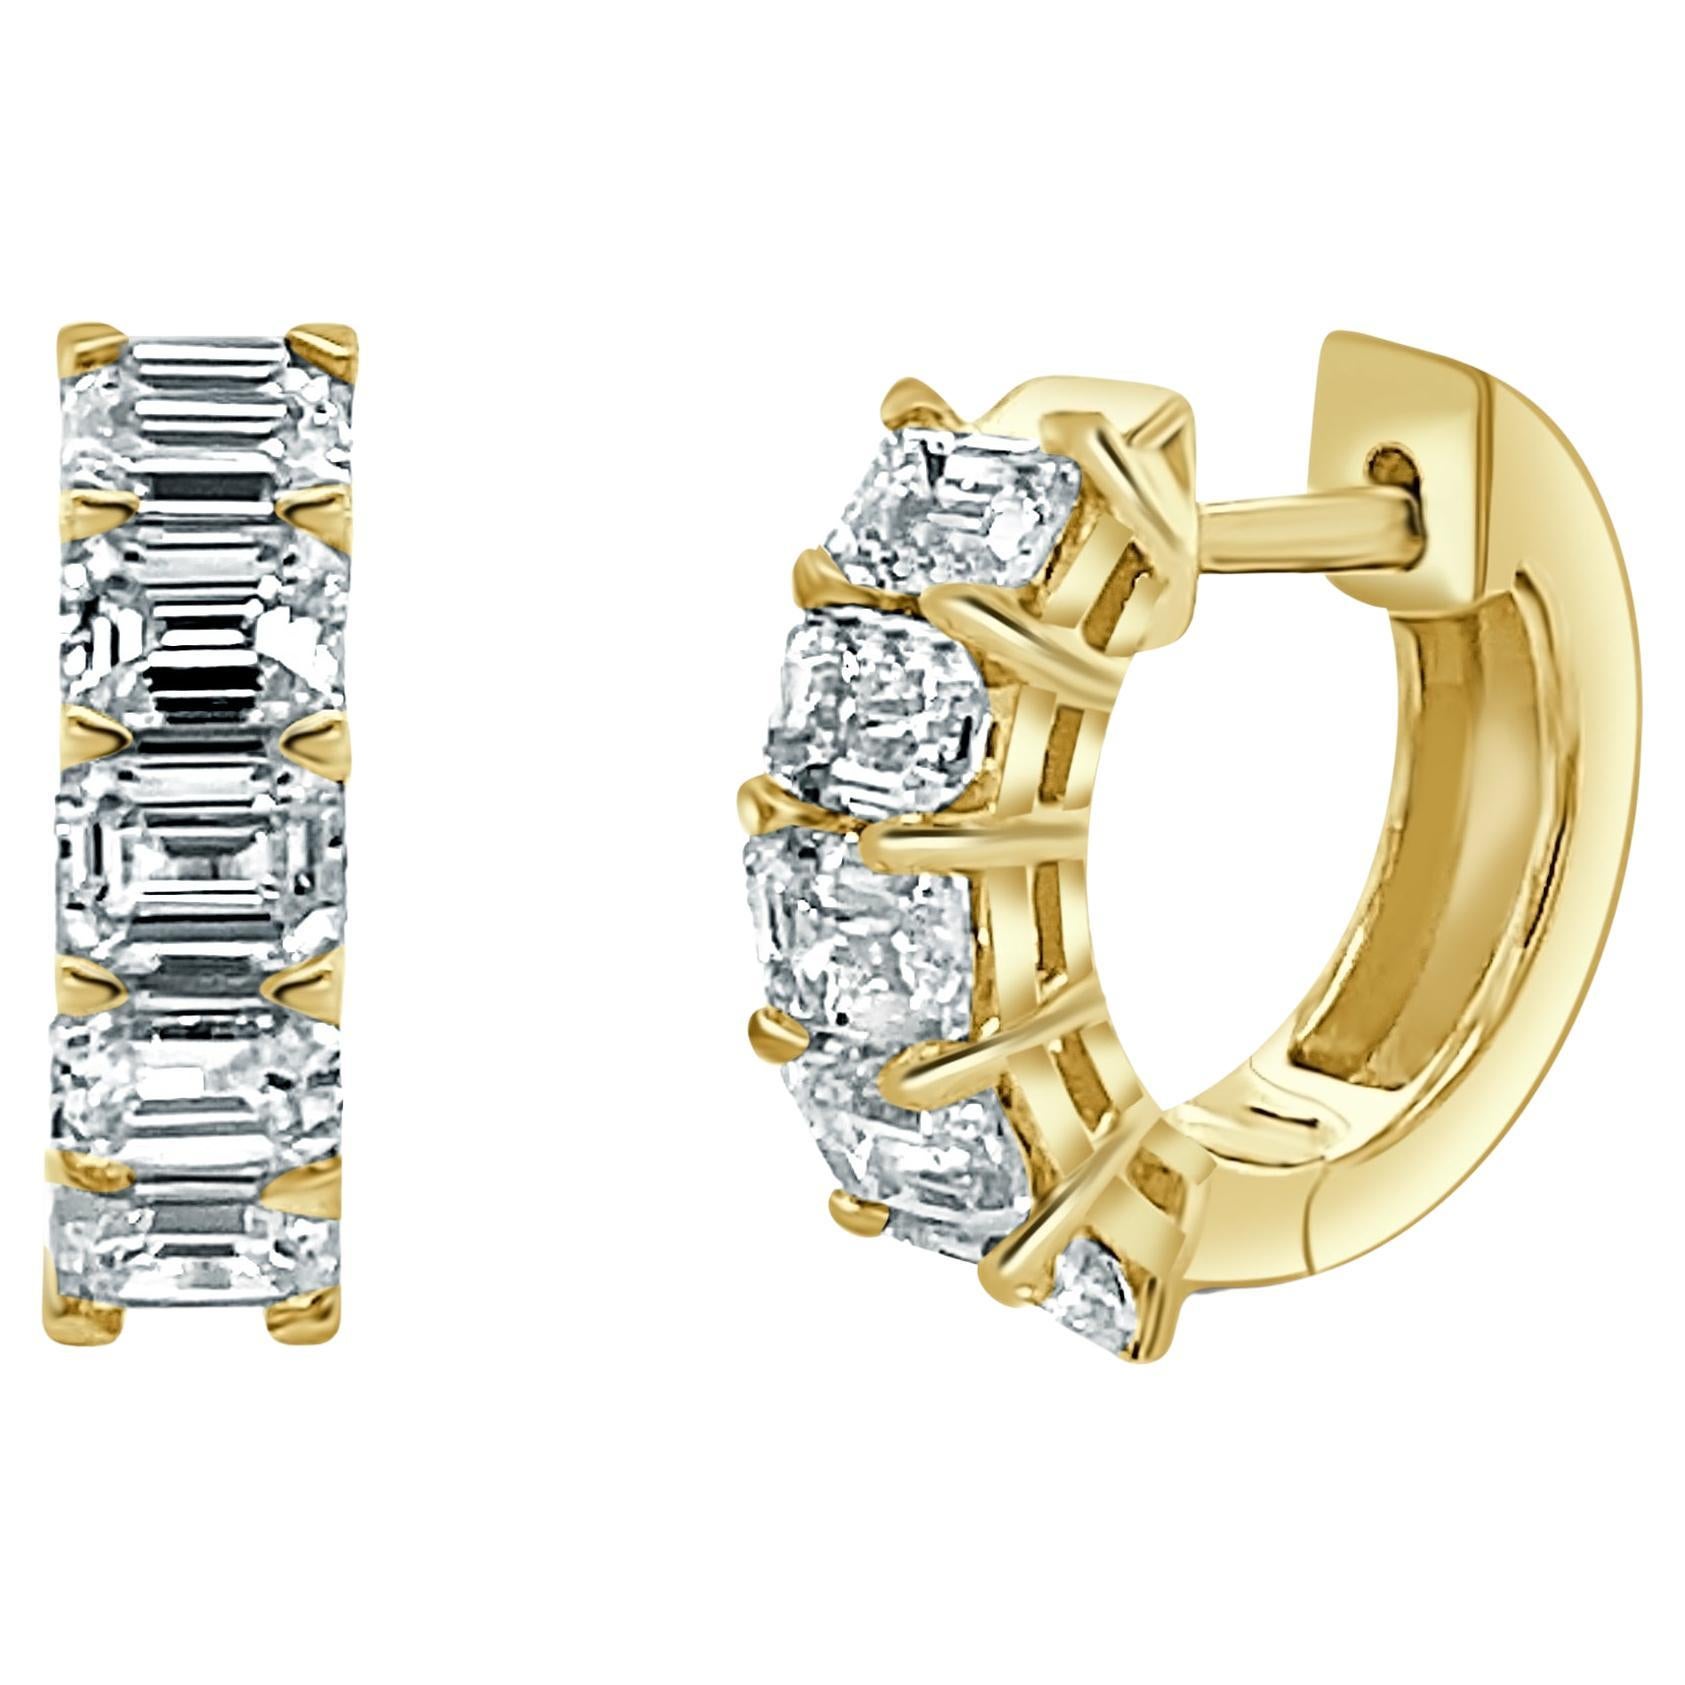 Huggies en or jaune 14 carats et diamants taille émeraude de 1,60 carat pour elle